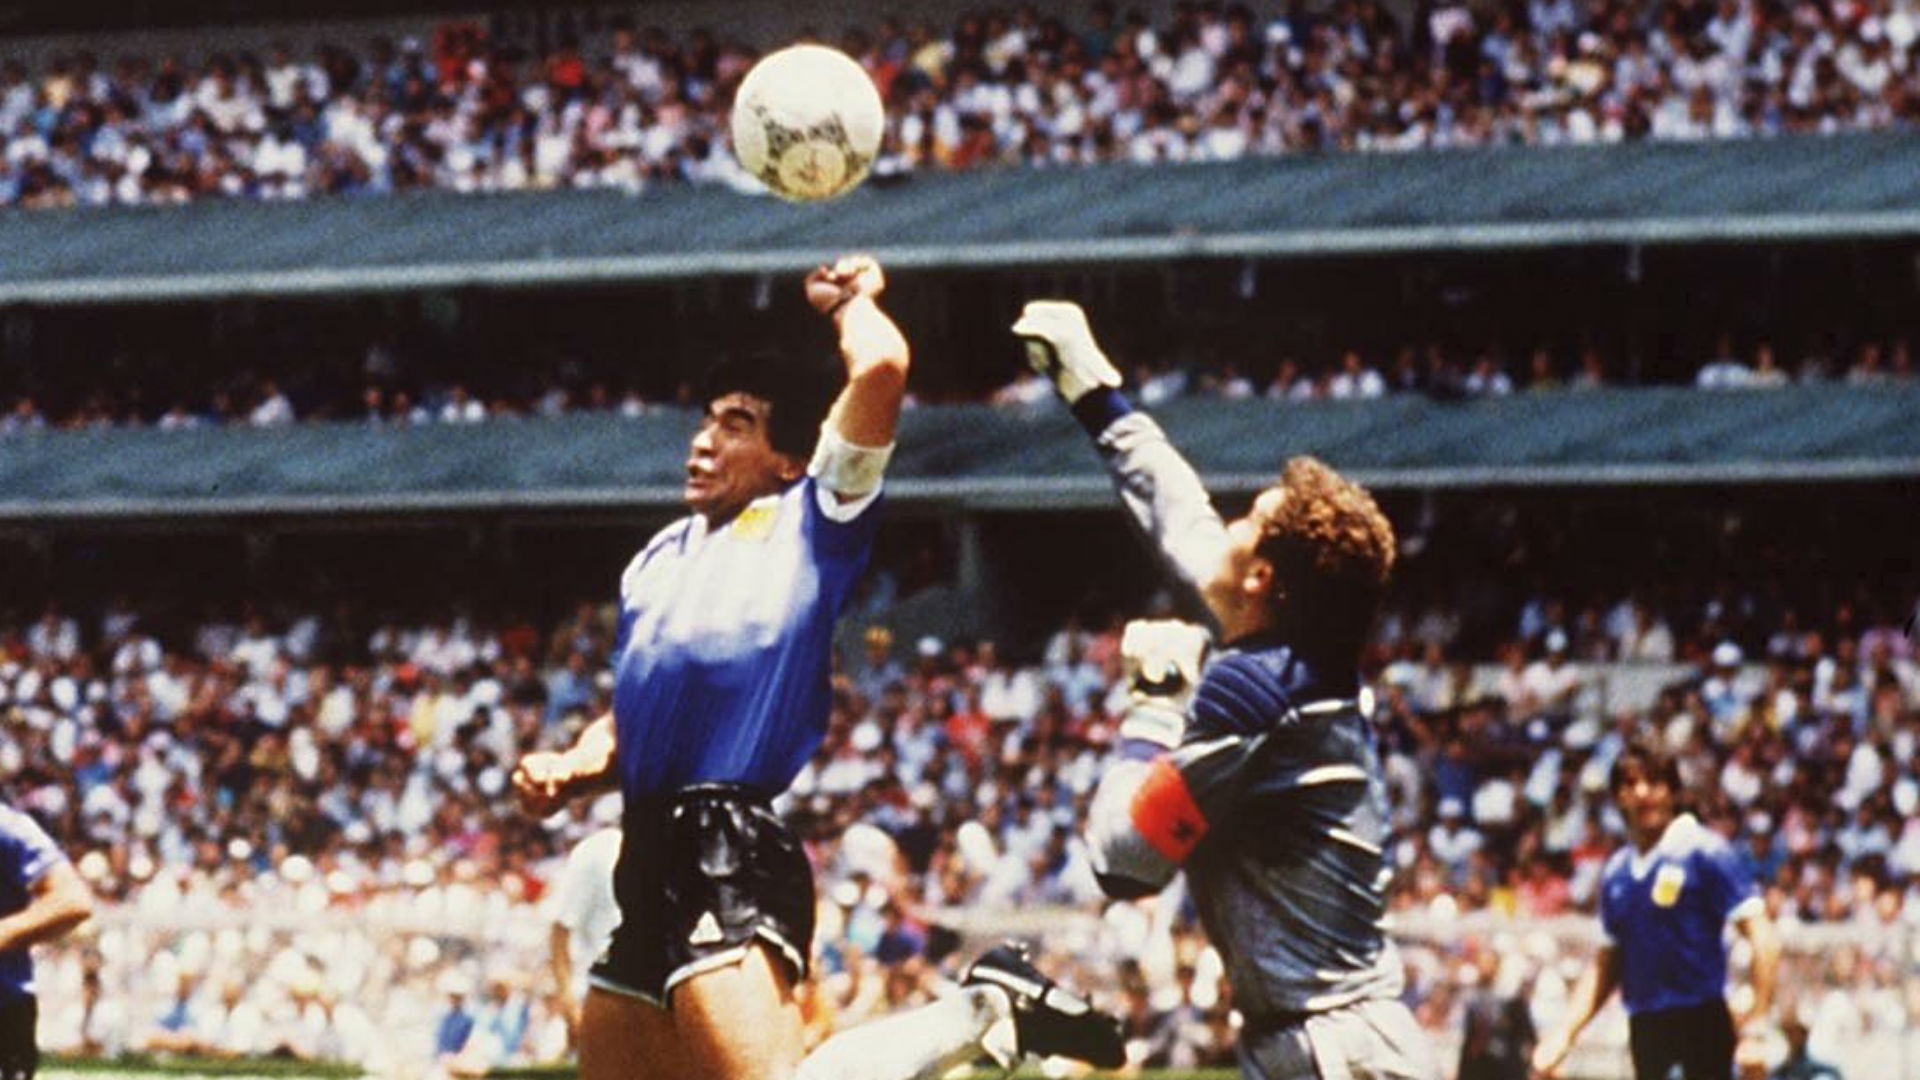 Maradona tỉnh bơ nói “tui đánh đầu ghi bàn đó chớ” sau trận thắng tuyển Anh ở World Cup 1986. Ảnh: CNN.